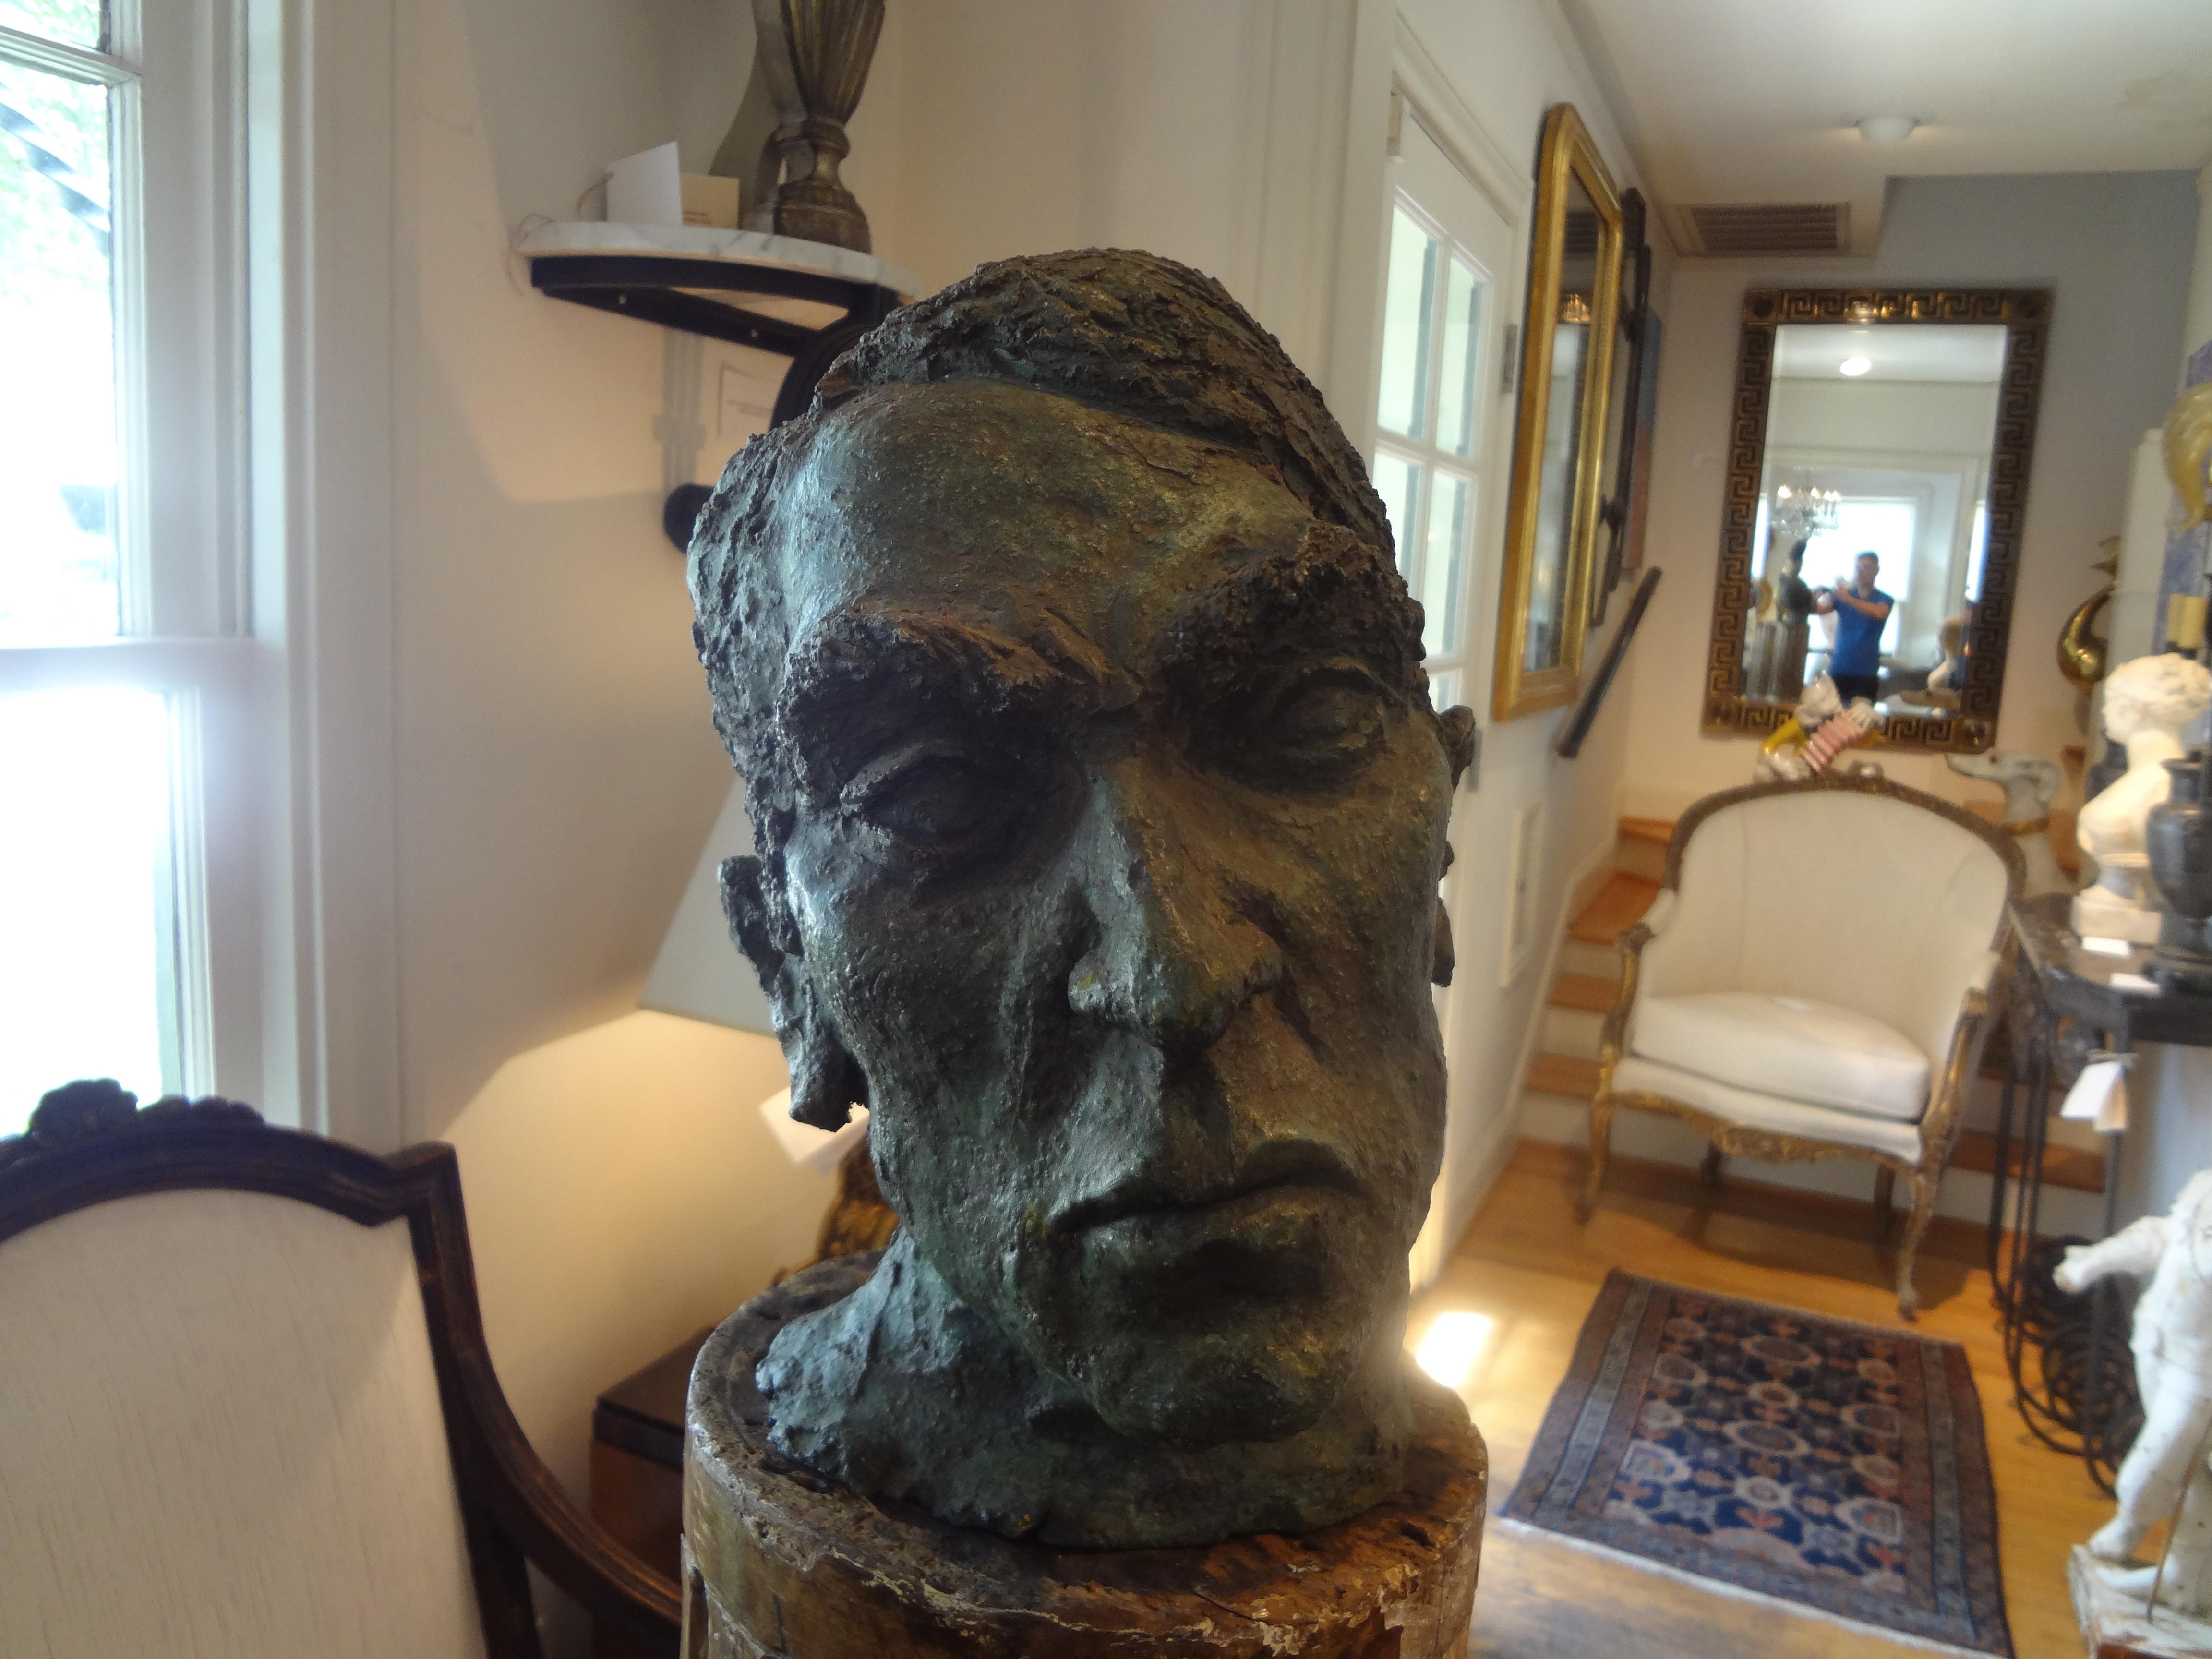 Superbe buste français en terre cuite patinée du milieu du siècle dernier, à la manière d'Alberto Giacometti. Cette sculpture de buste brutaliste fabuleusement exécutée date du début des années 1960.